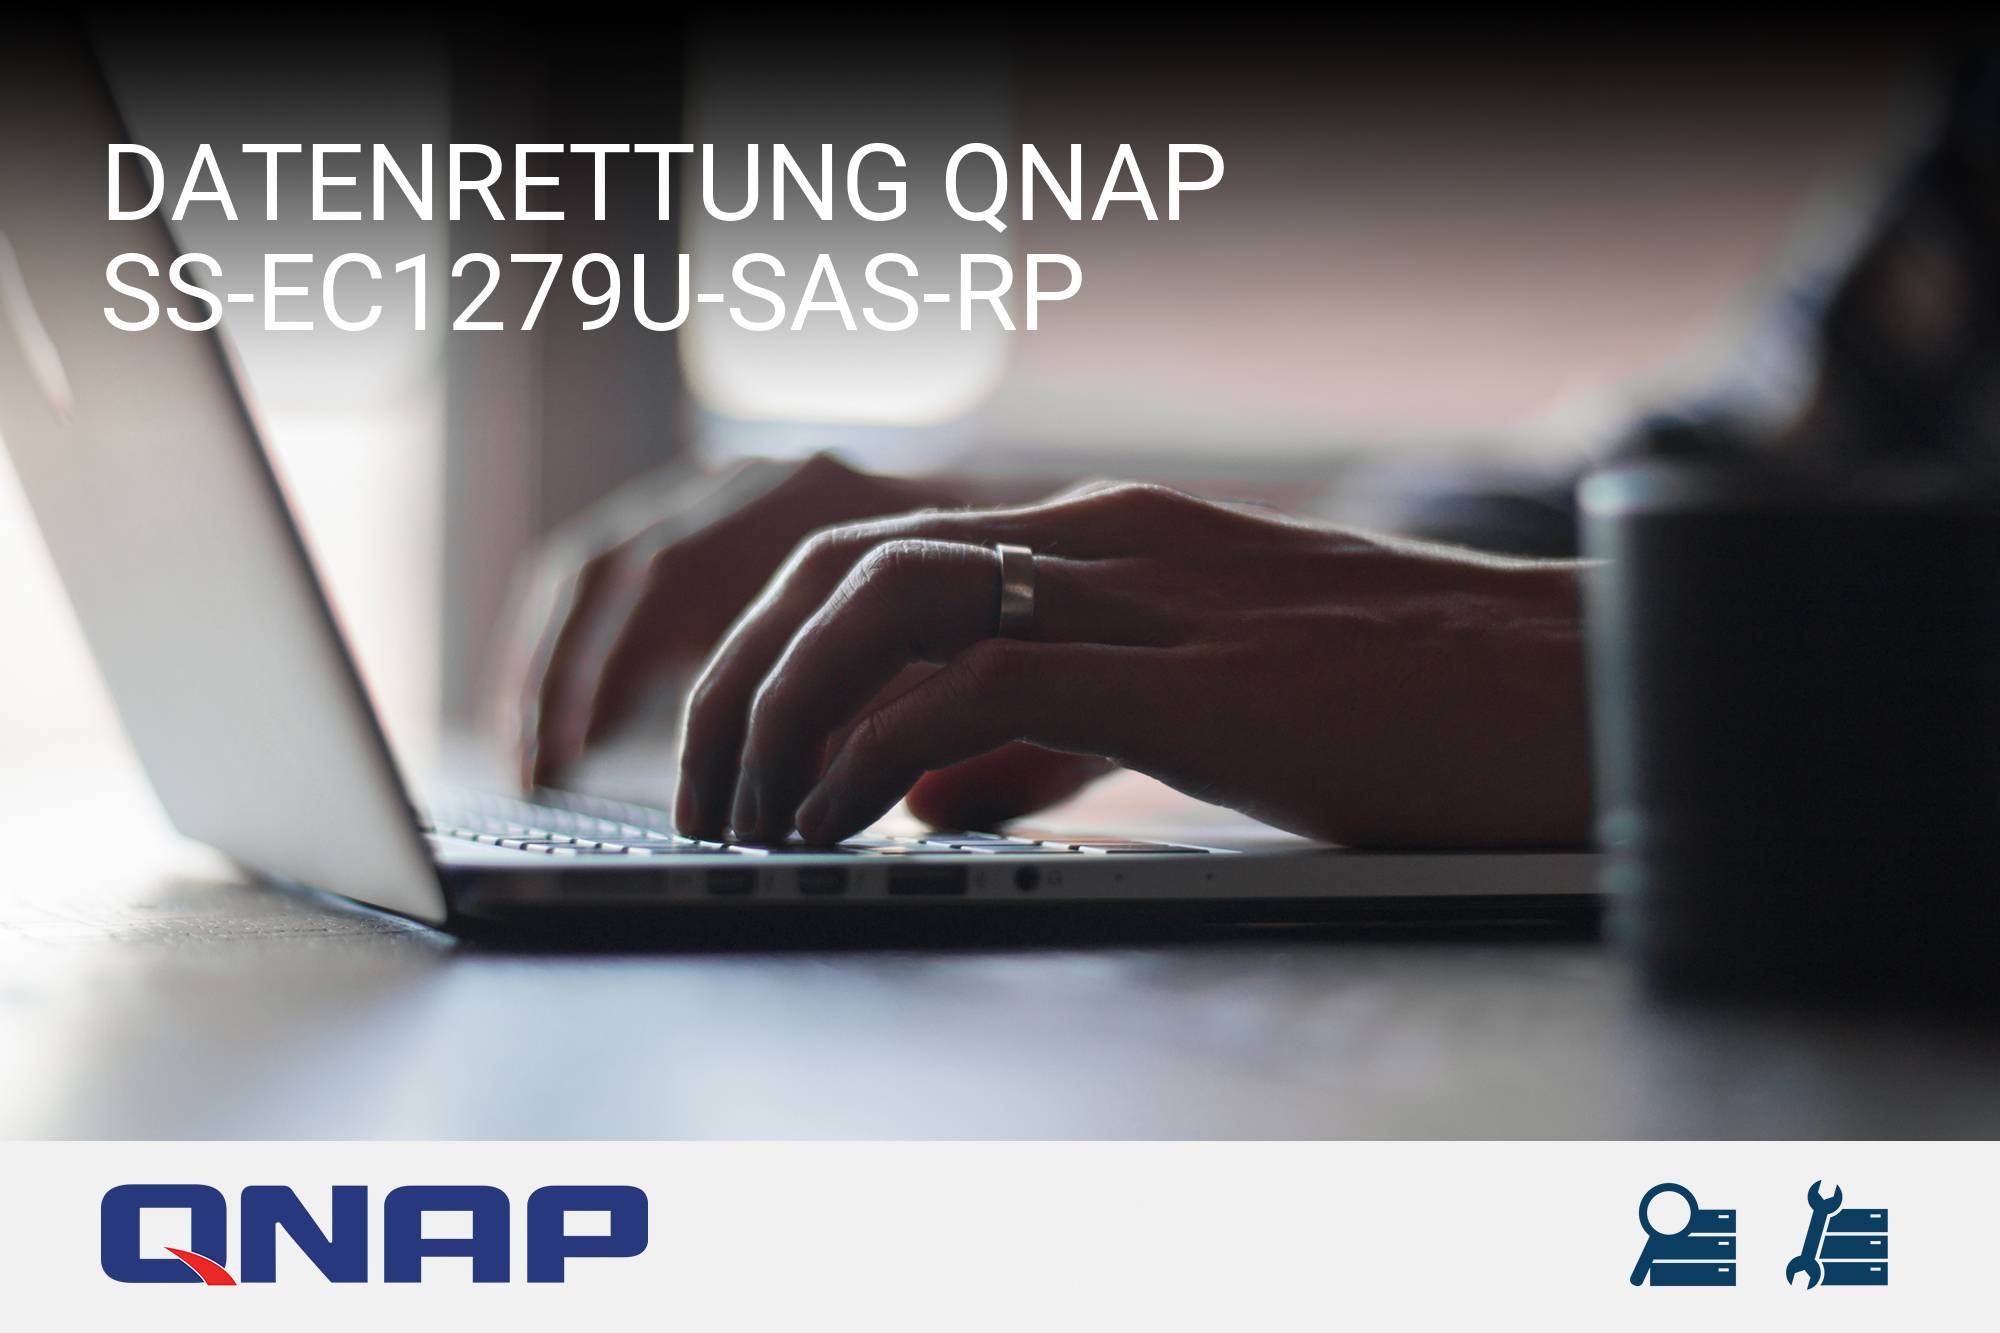 QNAP SS-EC1279U-SAS-RP